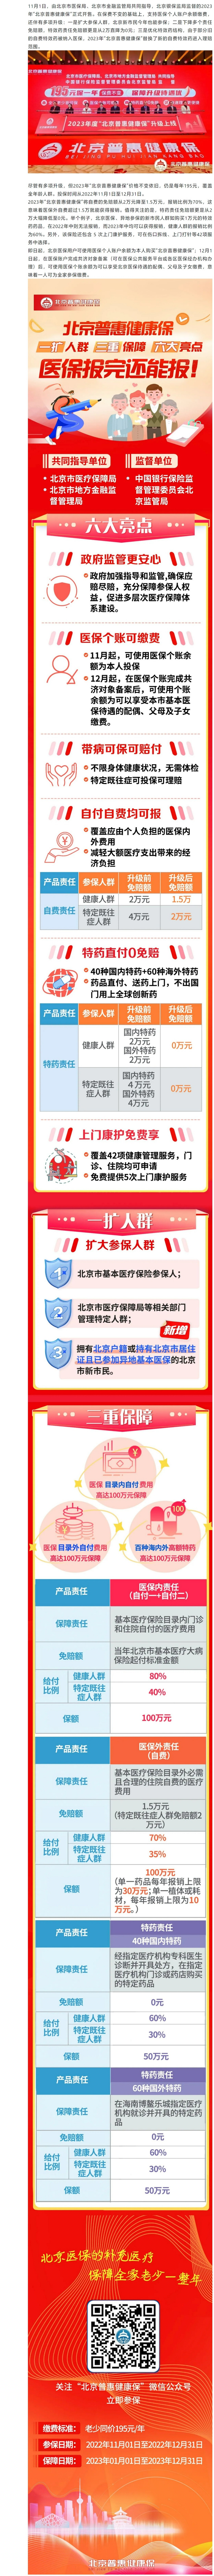 FireShot Capture 415 - 2023年度“北京普惠健康保”升级上线 可用医保余额缴费 - mp.weixin.qq.com.jpg